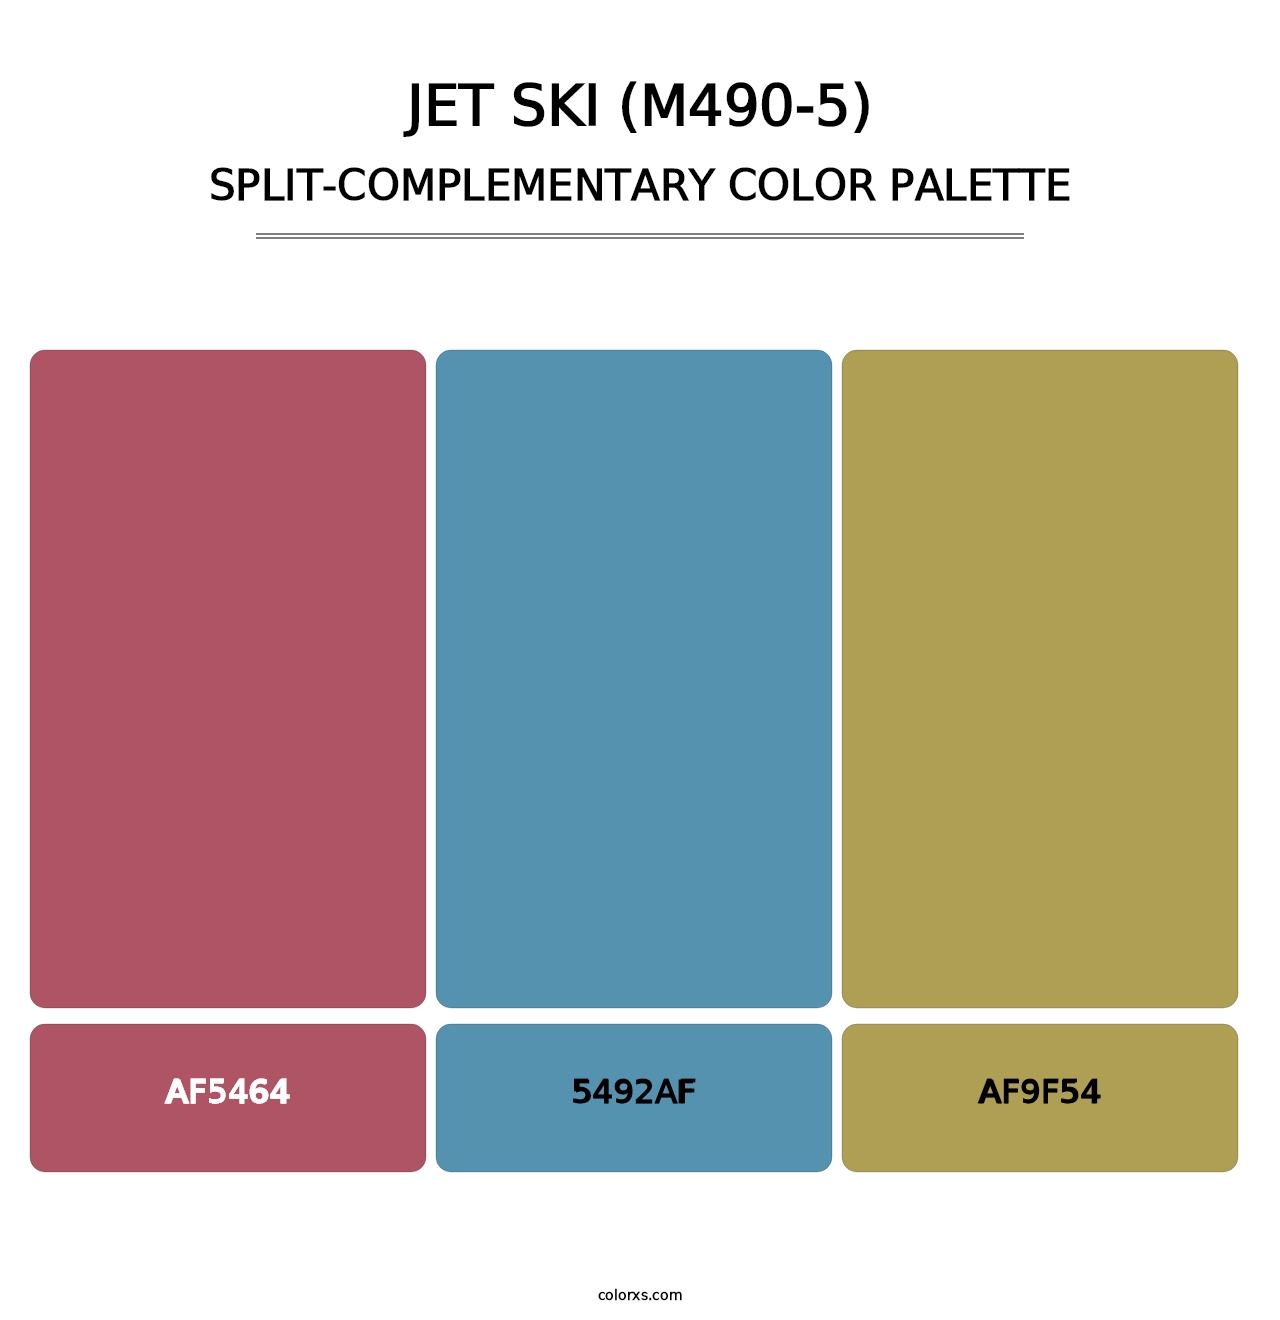 Jet Ski (M490-5) - Split-Complementary Color Palette